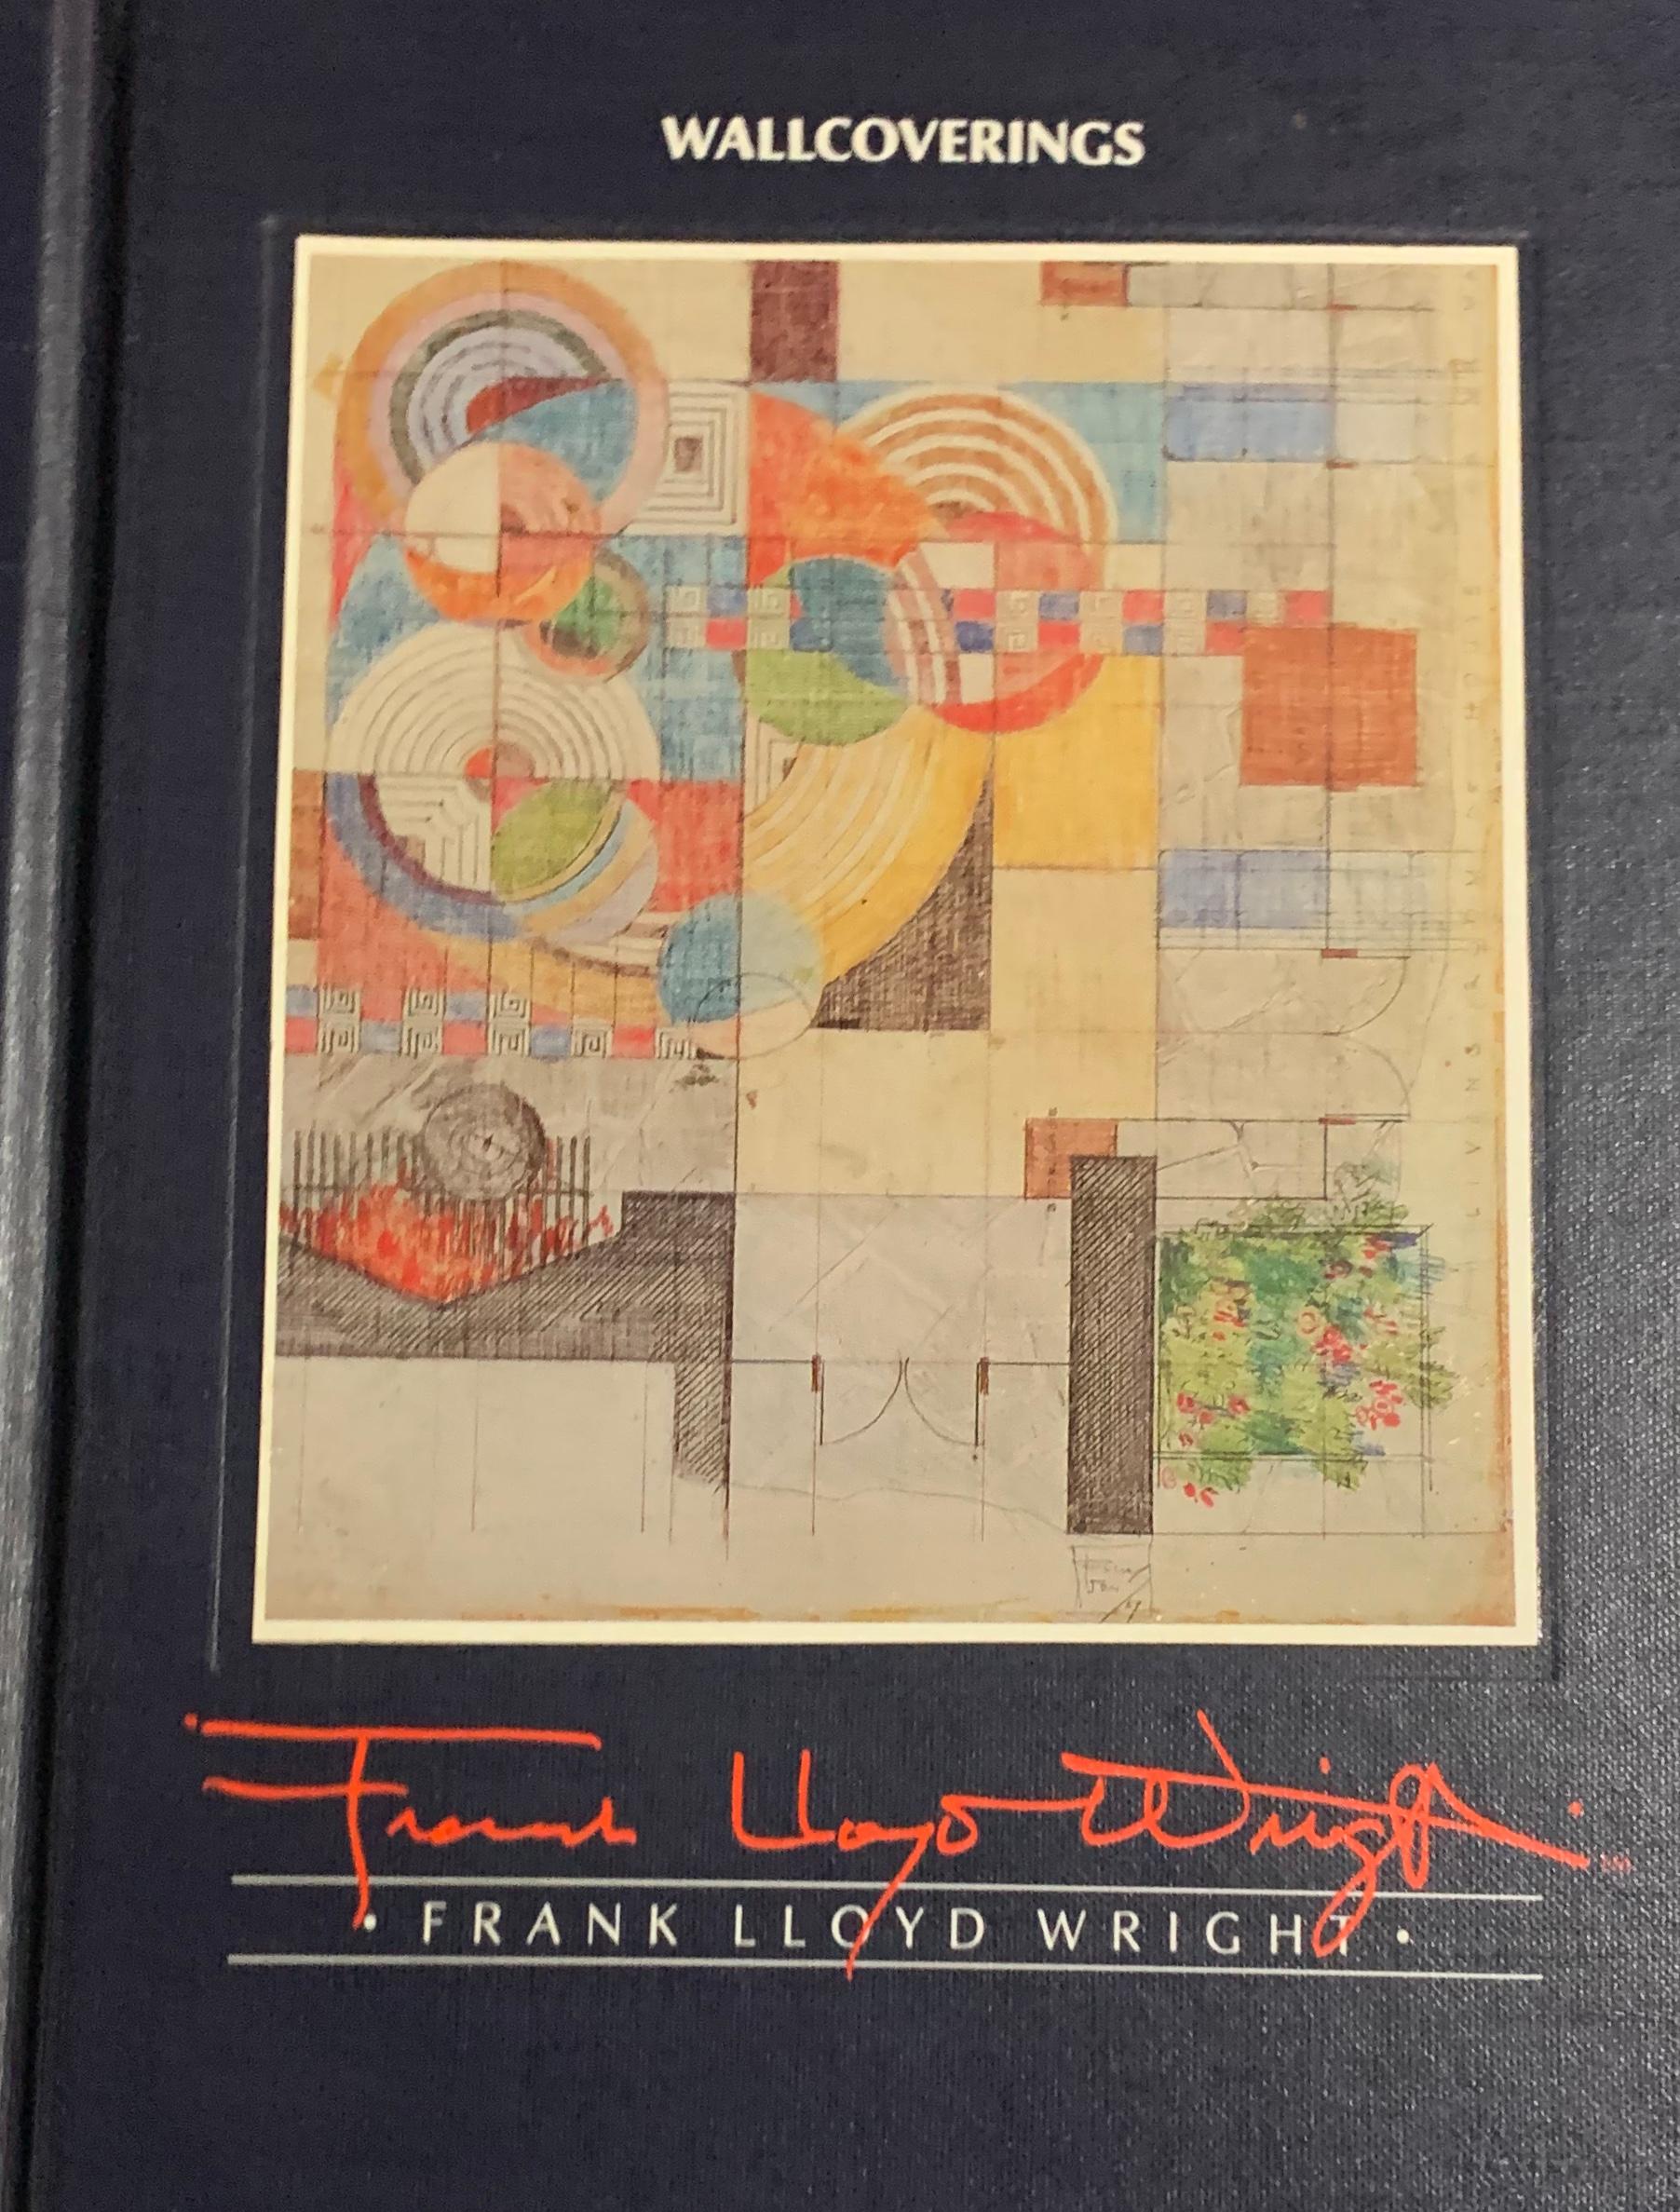 Frank Lloyd Wright Buch über Innenarchitektur, herausgegeben von Schumacher, 